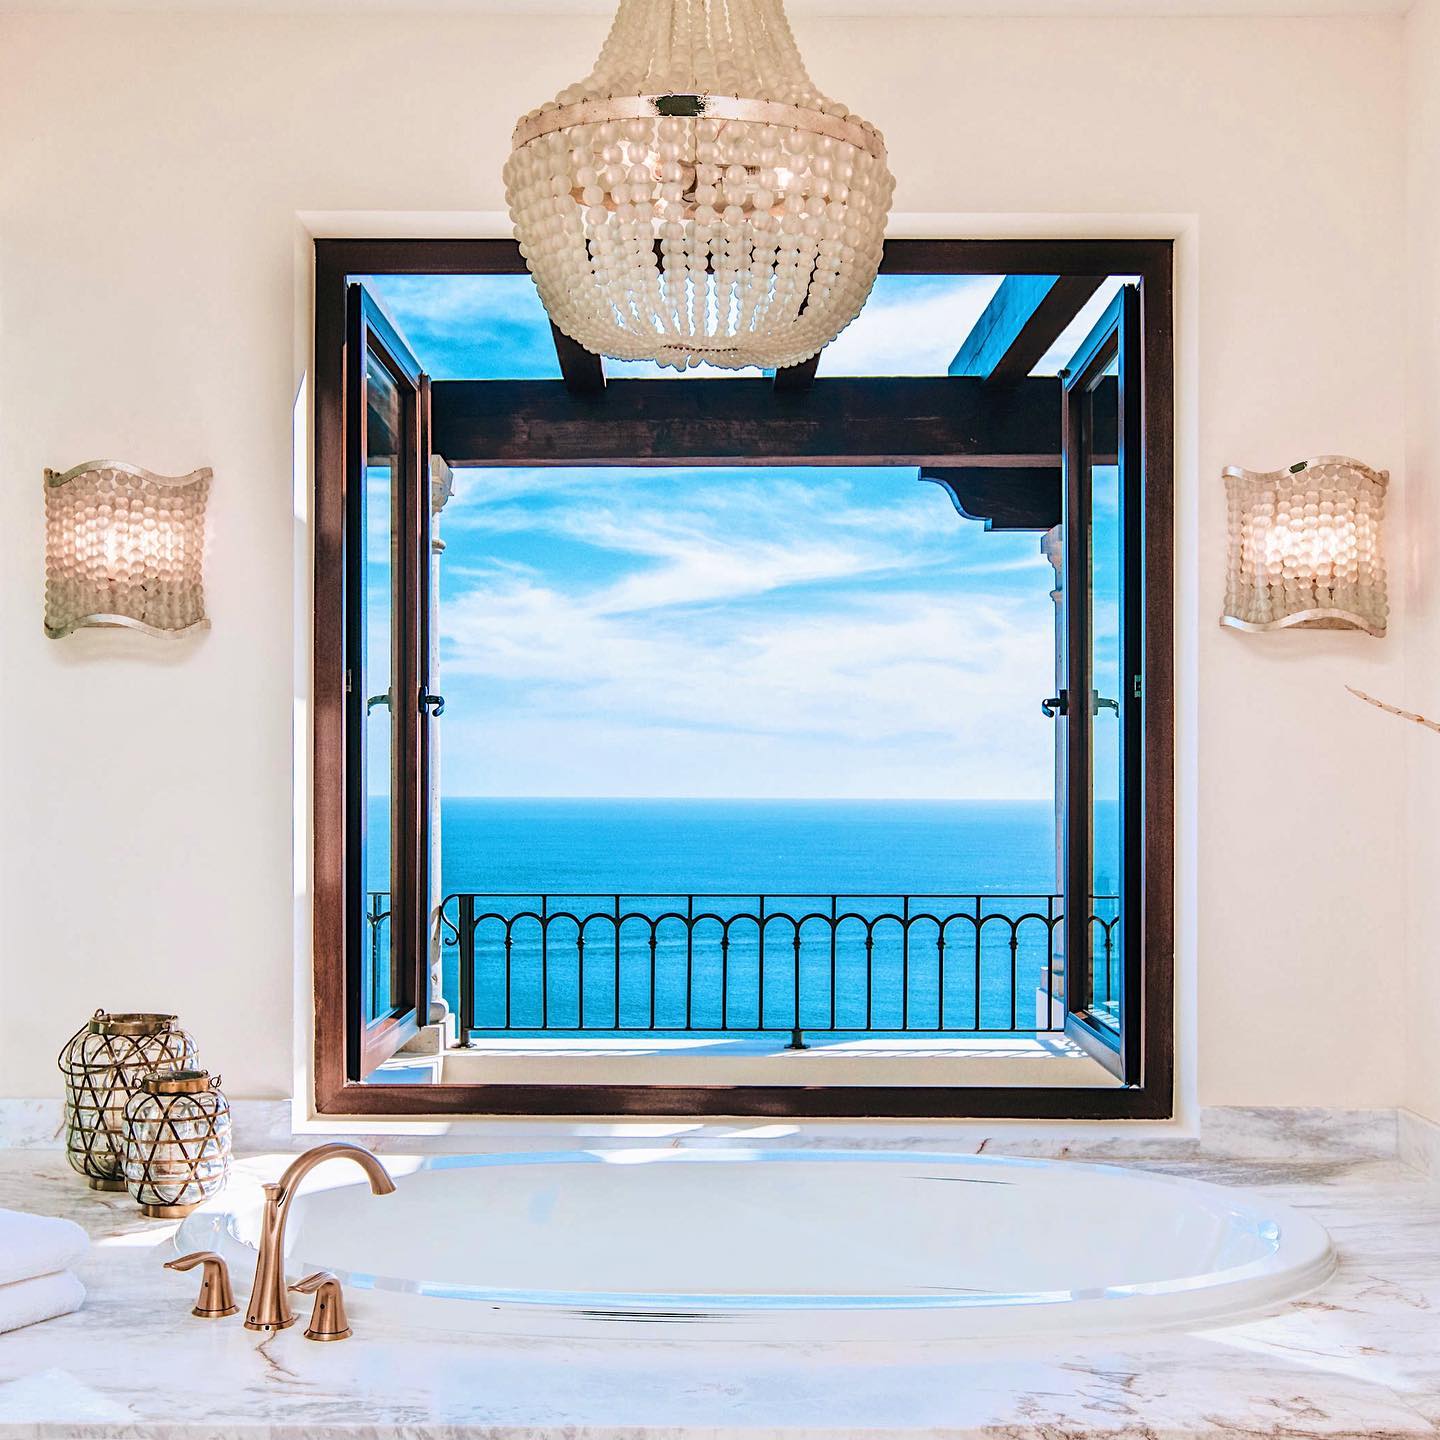 Casa Stella luxury vacation rental in Cabo San Lucas Mexico ocean views